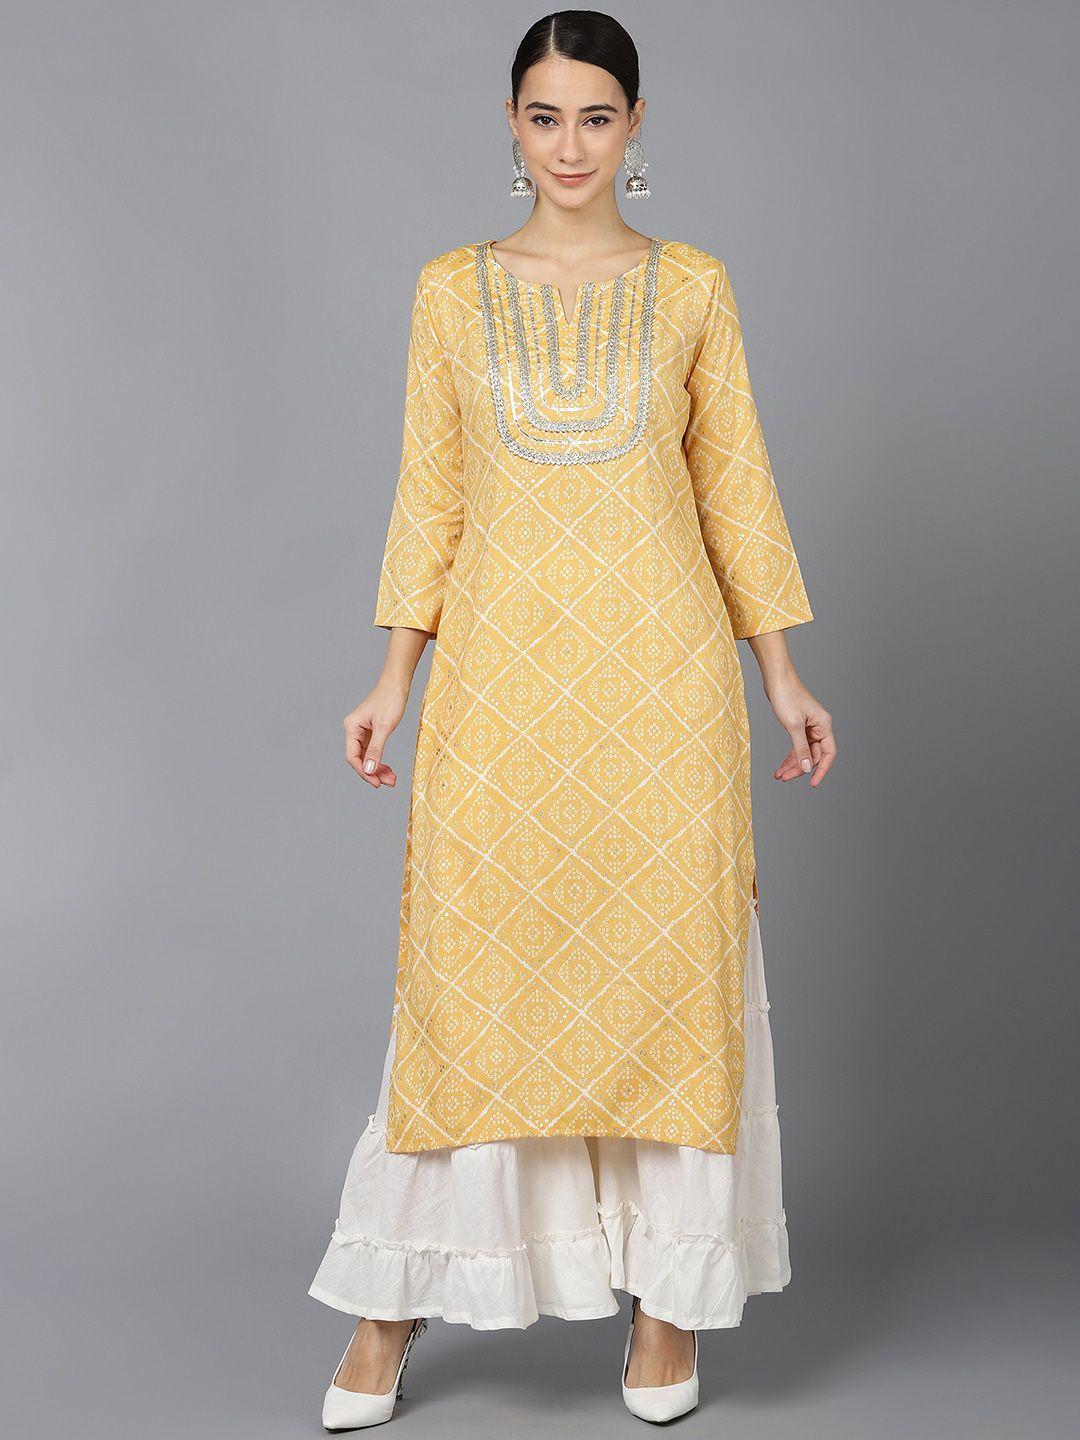 ahika women yellow & white ethnic motifs printed kurta